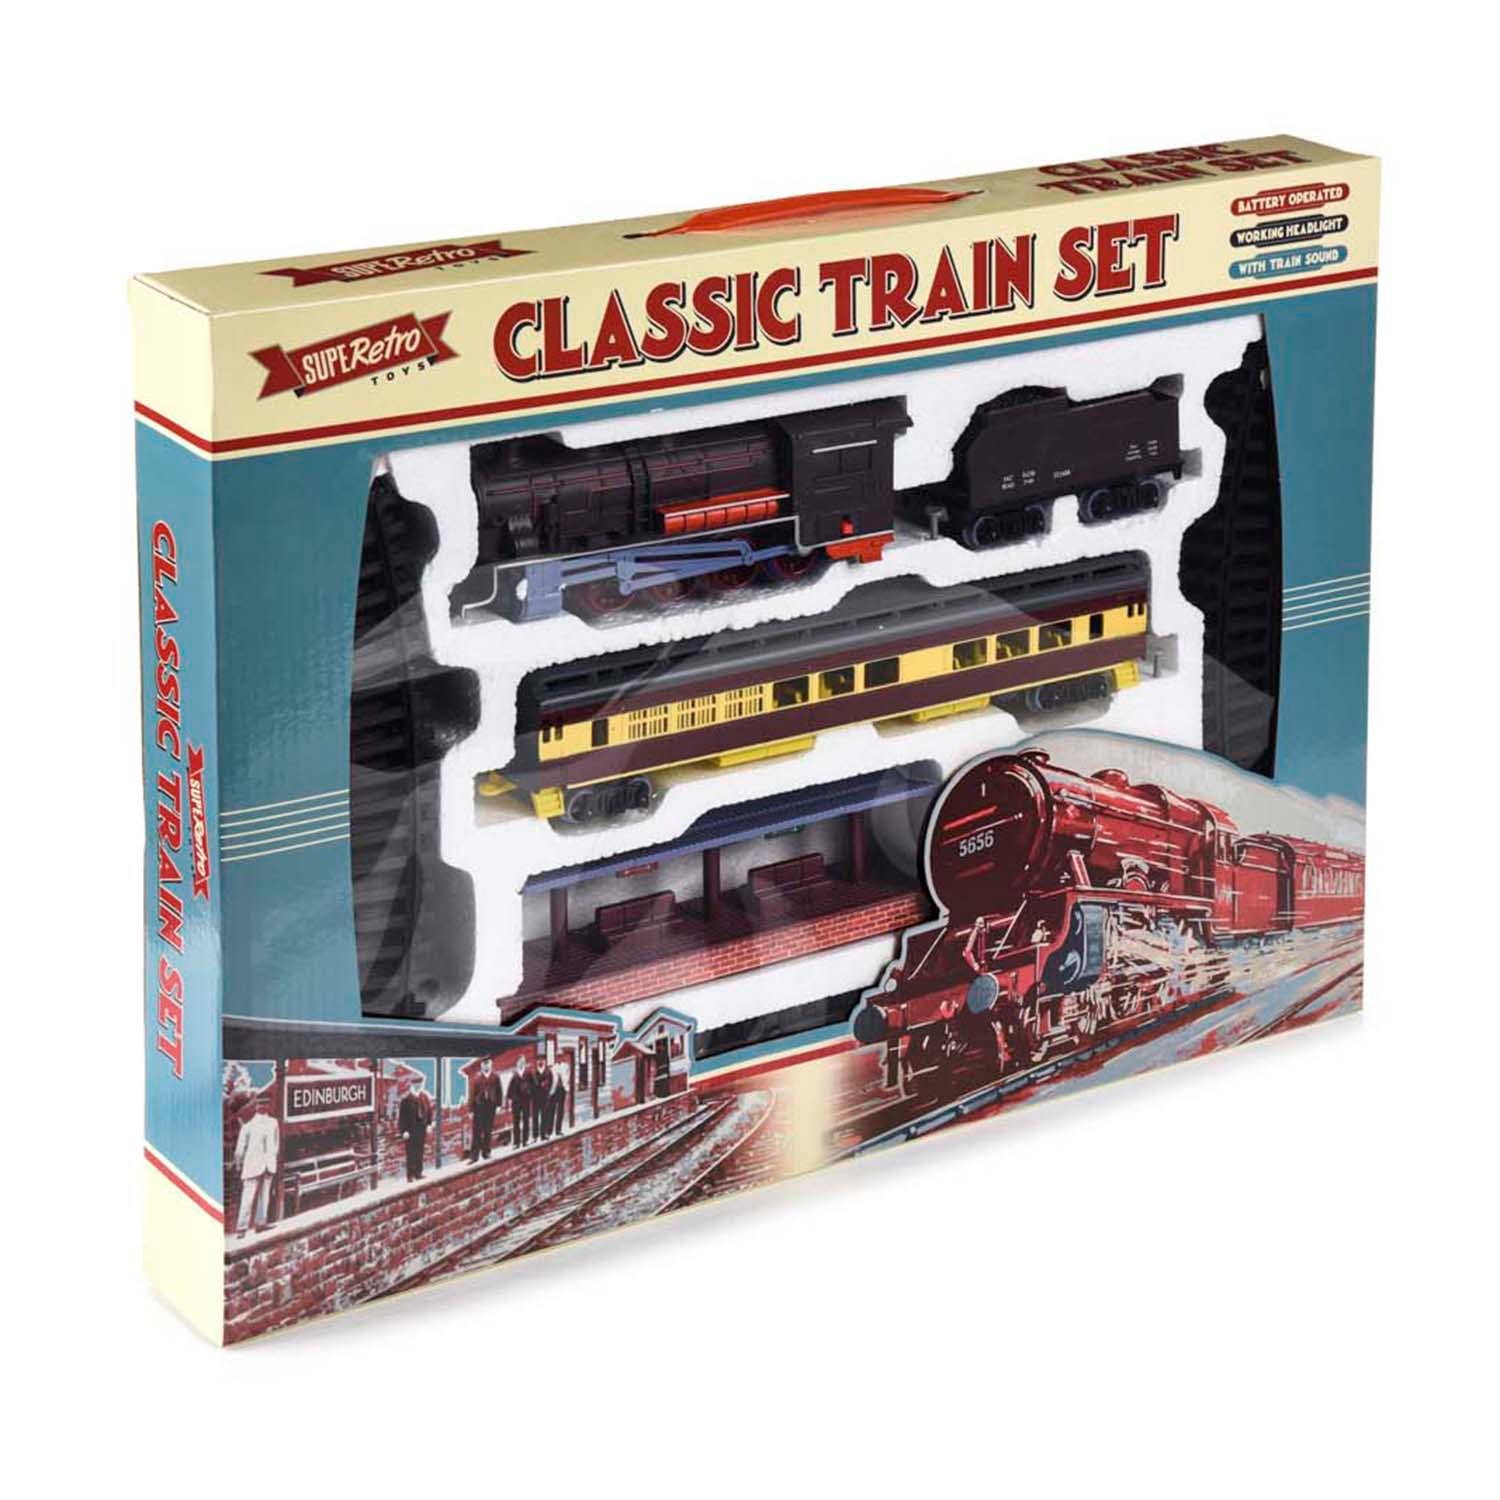 Retro Classic Train Set - Train Sets - Science Museum Shop 2